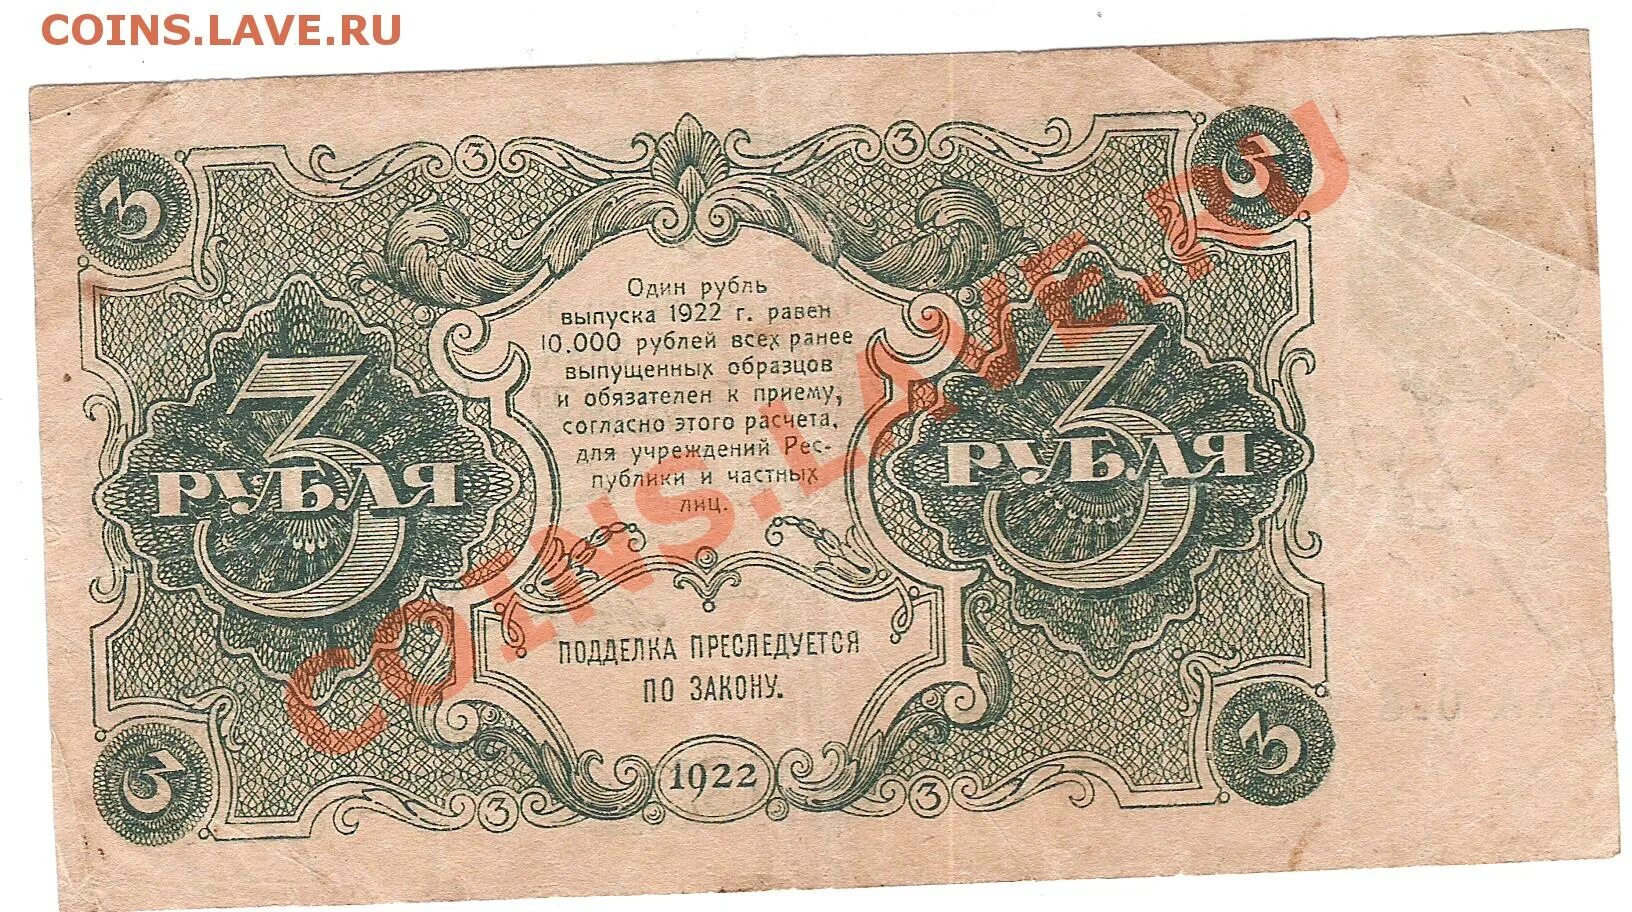 250 Рублей 1922. 25000 Рублей 1922. Латвийский рубль 1922. Выпуск советских марок 1922.